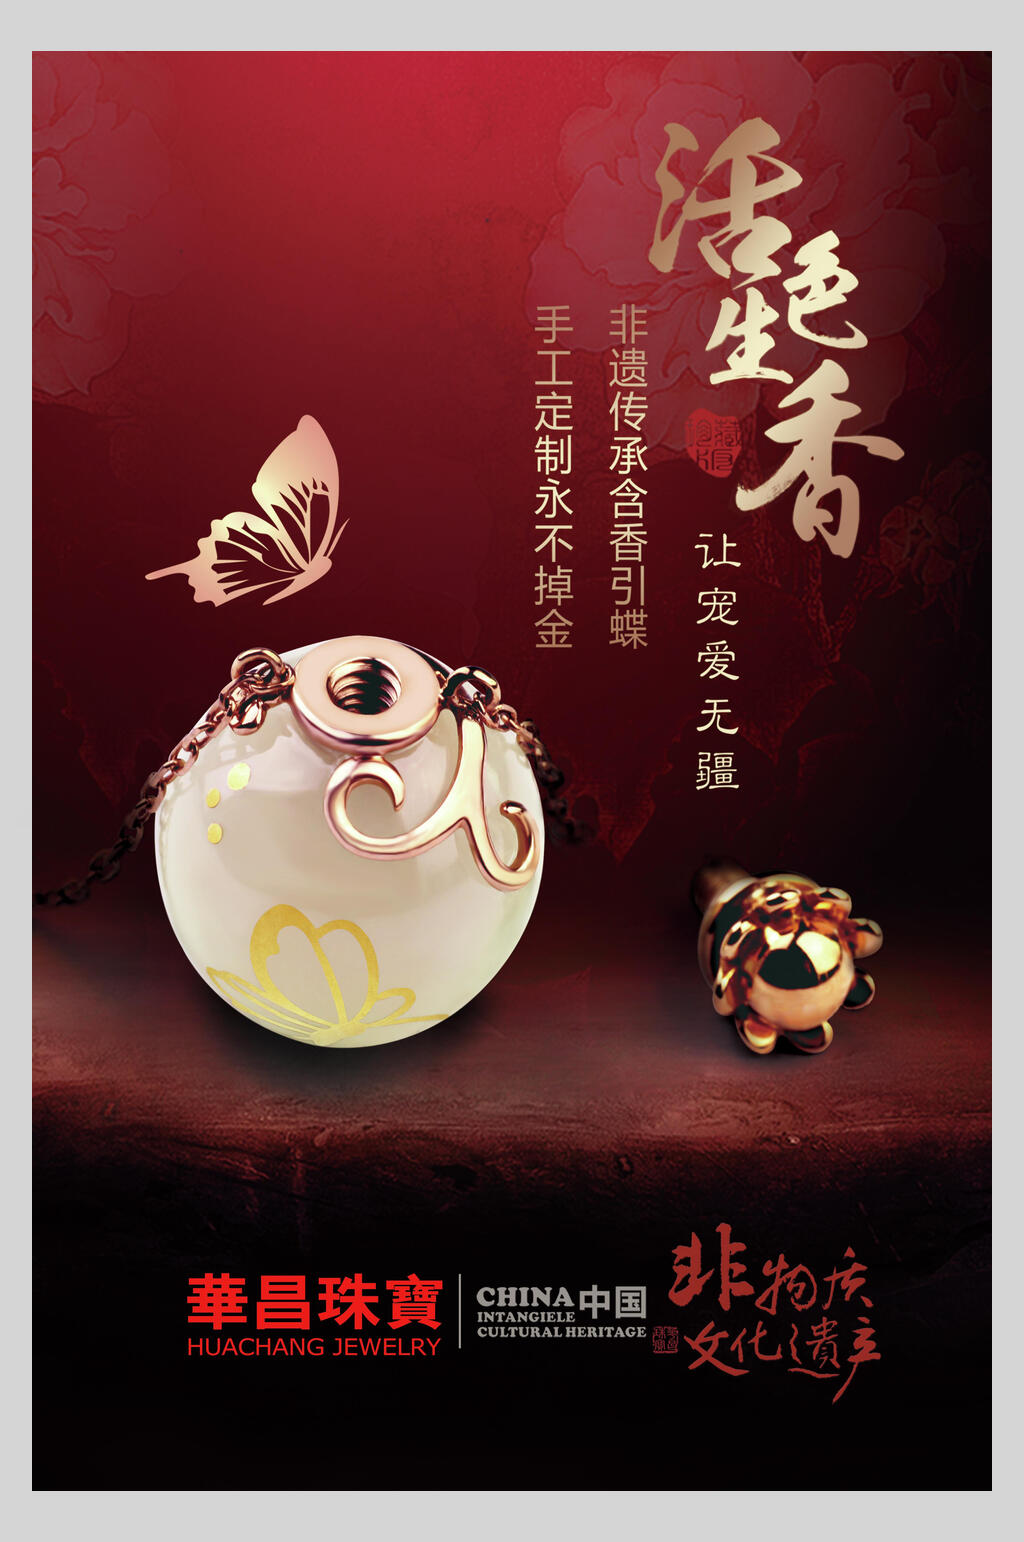 珠宝饰品促销海报素材免费下载,本作品是由刘丫上传的原创平面广告